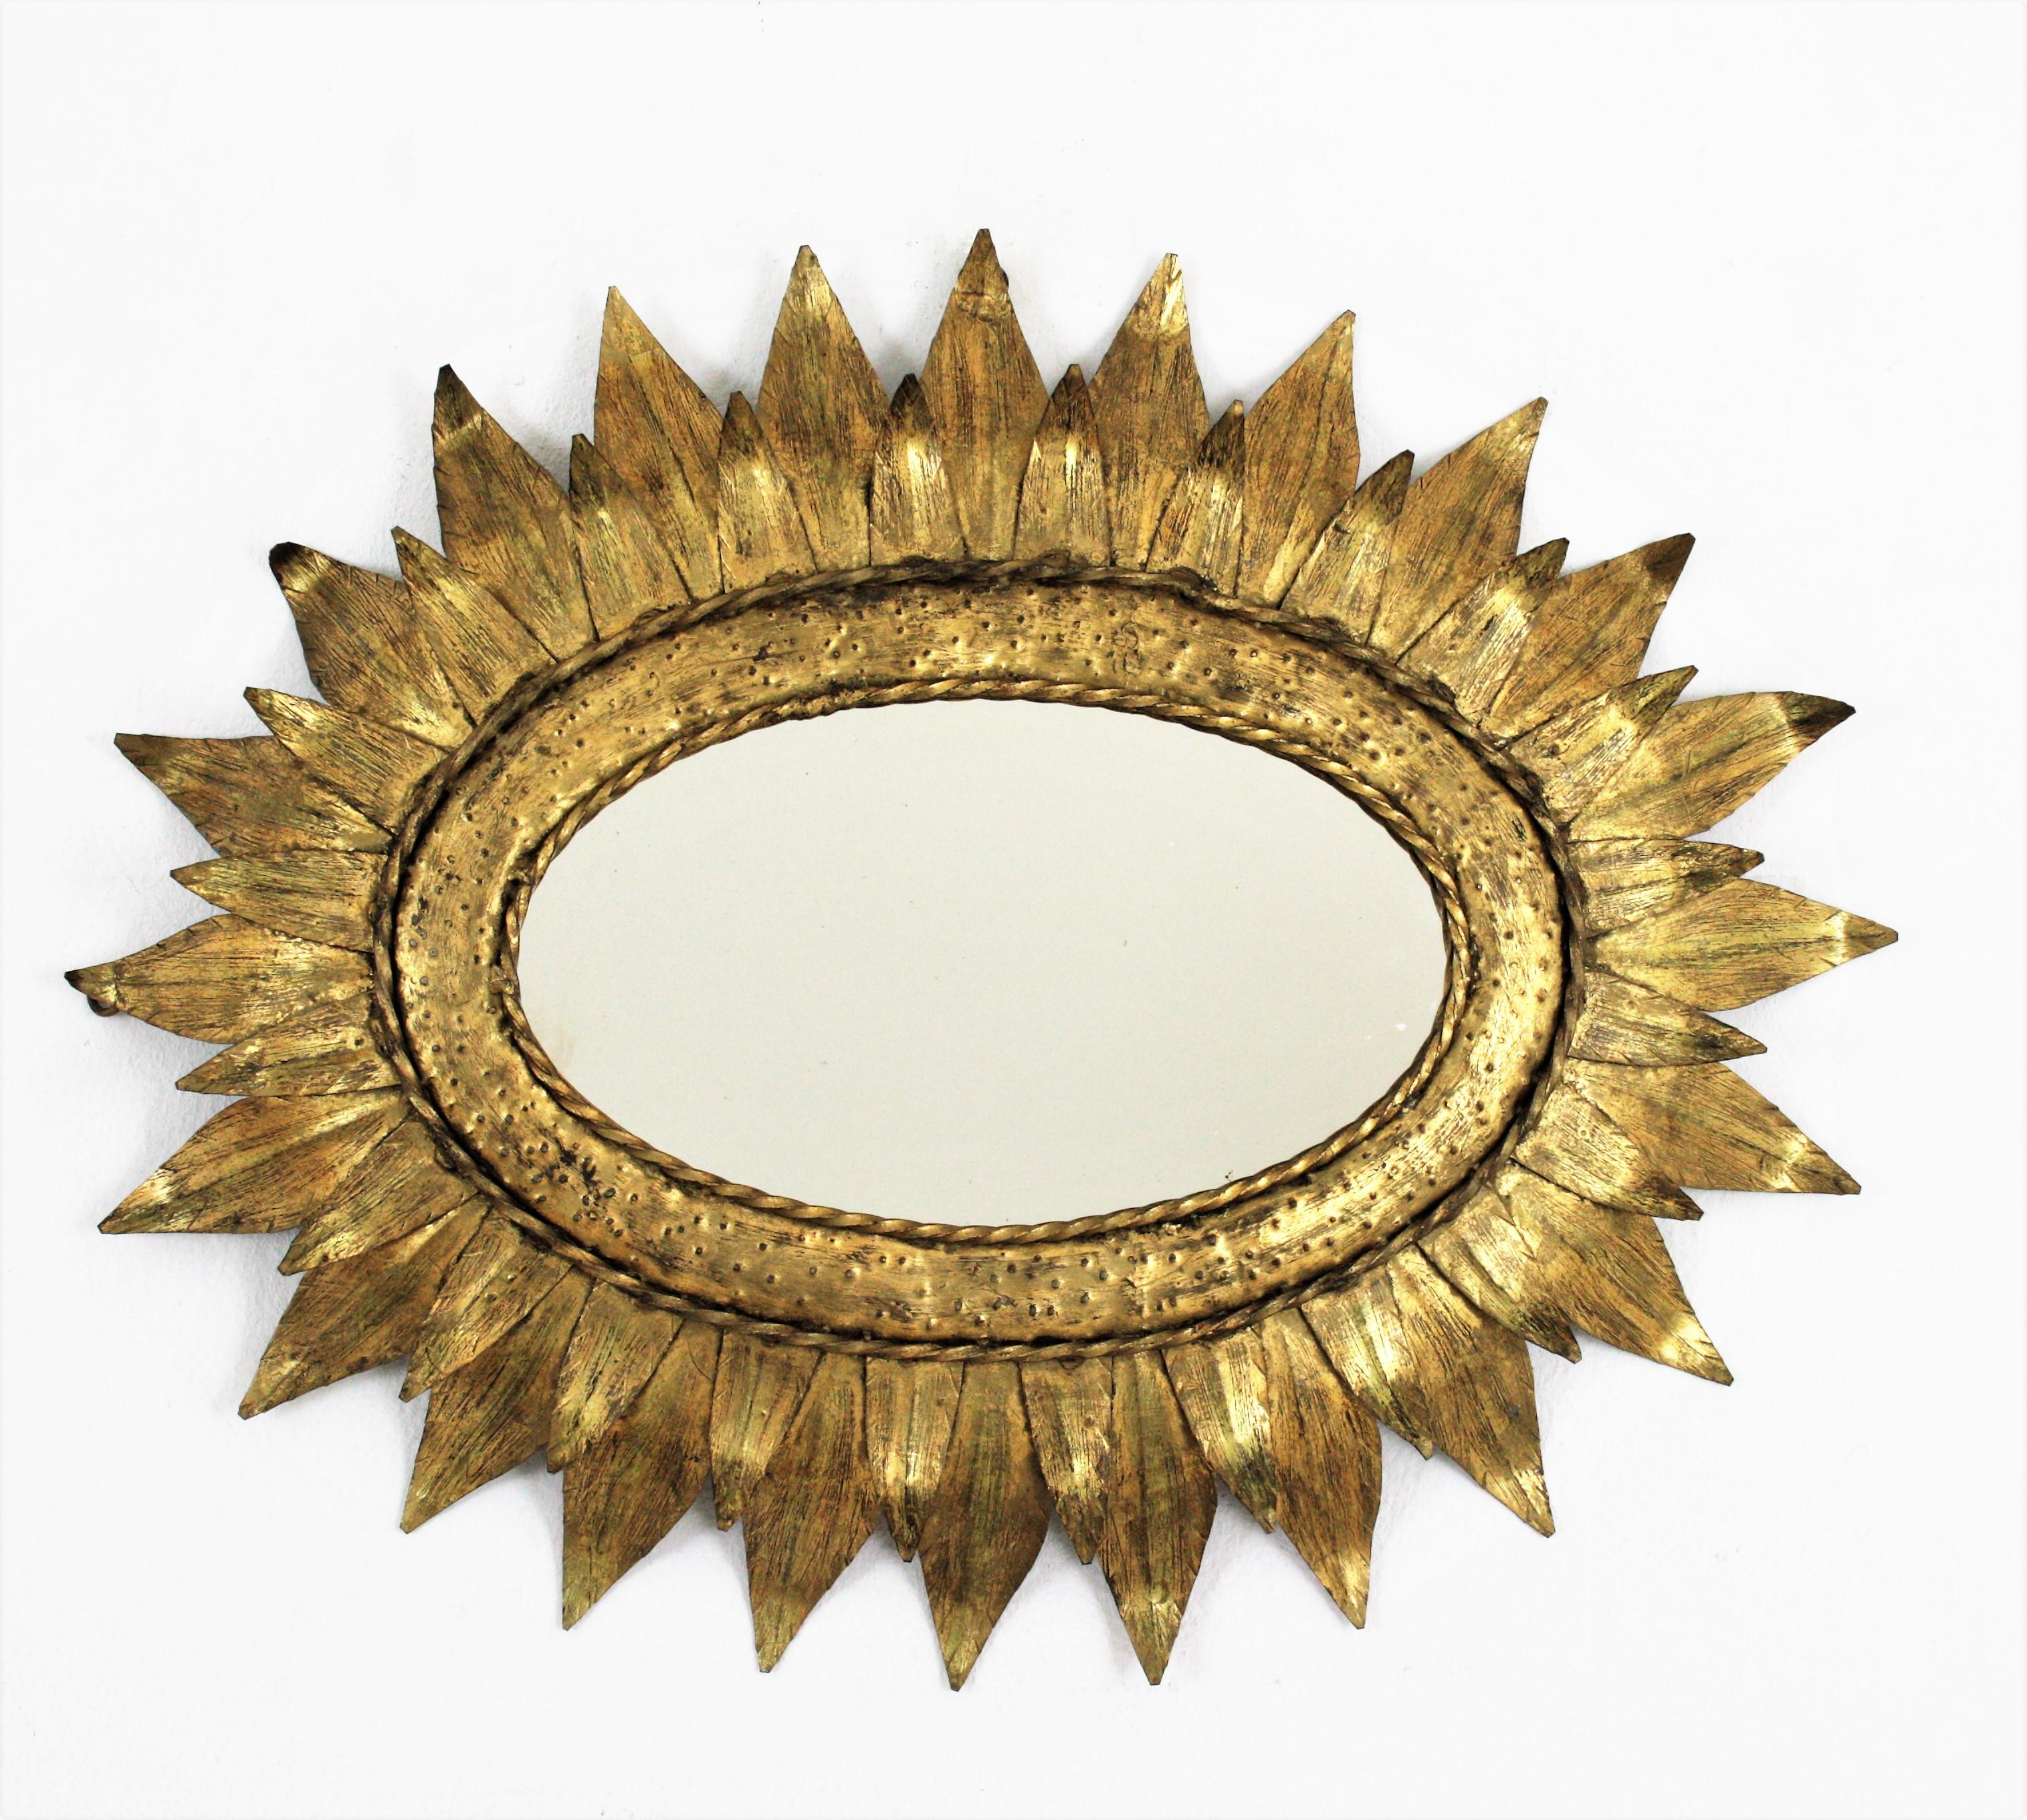 Miroir ovale en métal doré avec cadre à double feuille, années 1950
Miroir ovale en forme de soleil, fer doré. France, années 1950
______
Ce miroir mural en fer martelé à la main présente un cadre ovale à deux feuilles, fortement orné de marques de